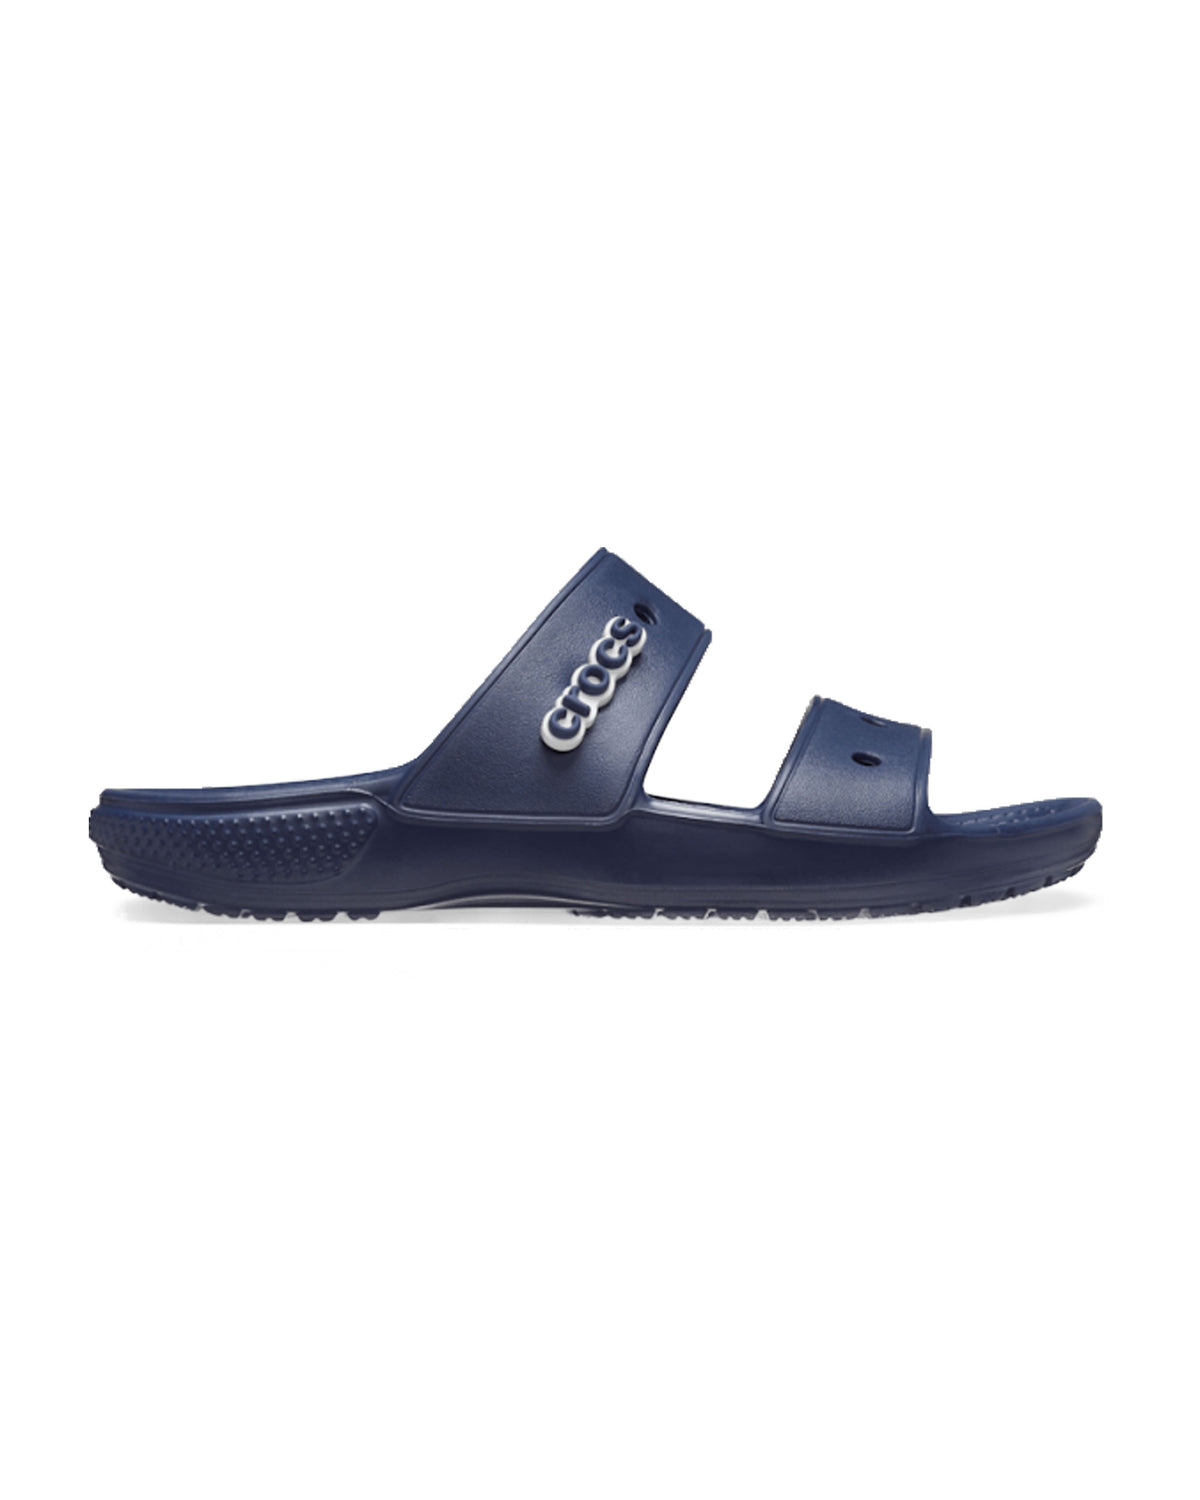 Classic Crocs Sandal Blue